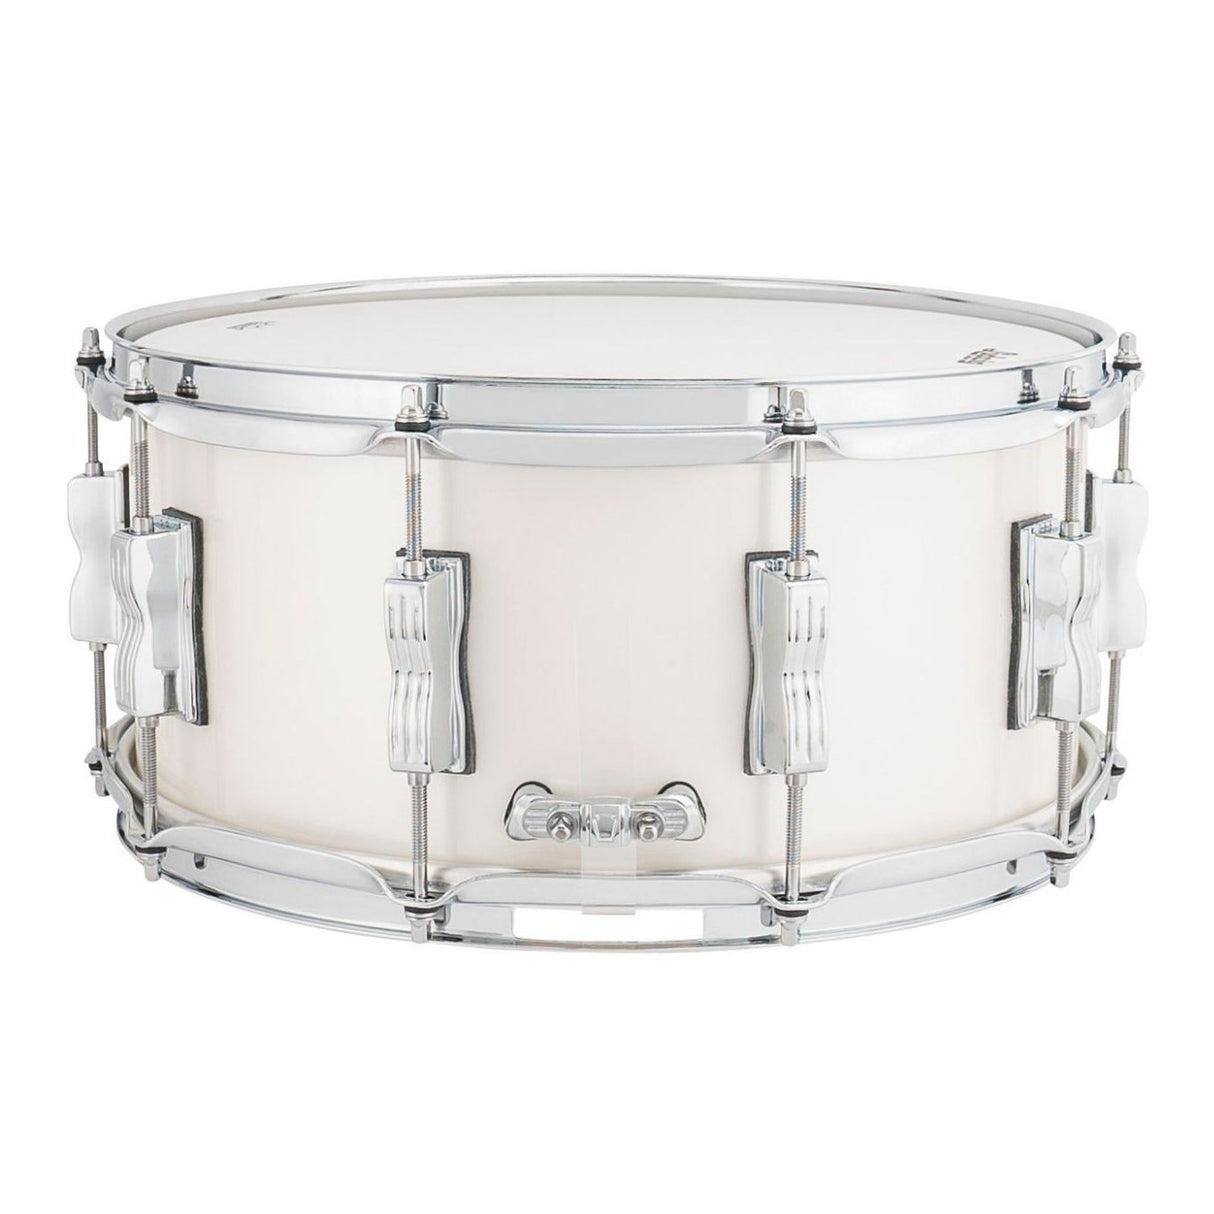 Ludwig Neusonic Snare Drum 14x6.5 Silver Silk